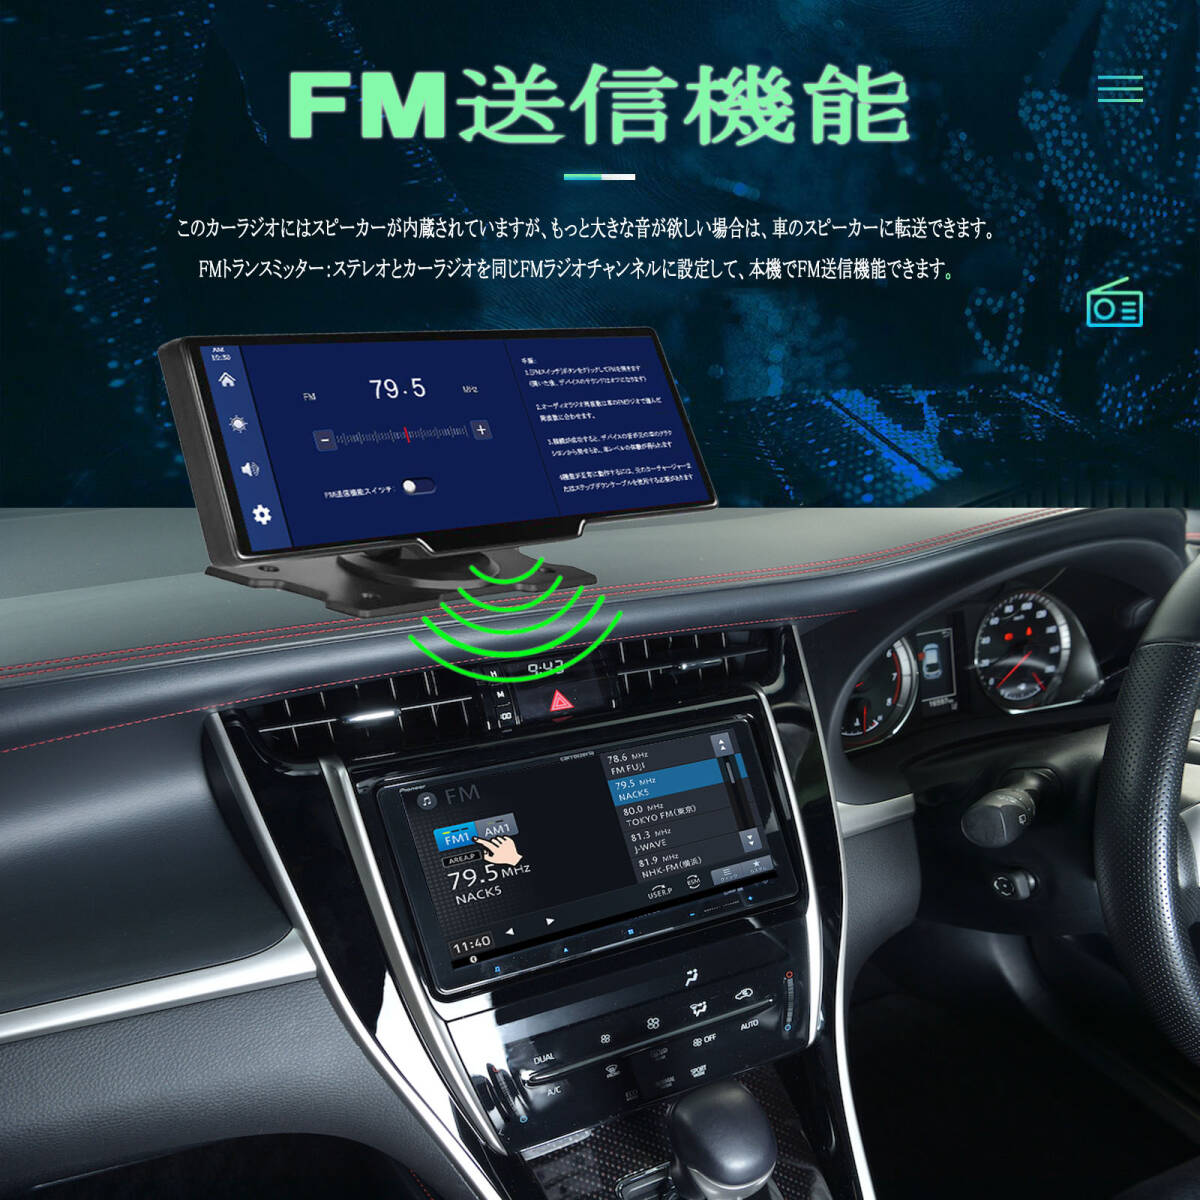 10.26インチ 大画面車載モニタードライブレコーダー Bluetooth/AUX CarPlay /Android Auto対応 _画像4